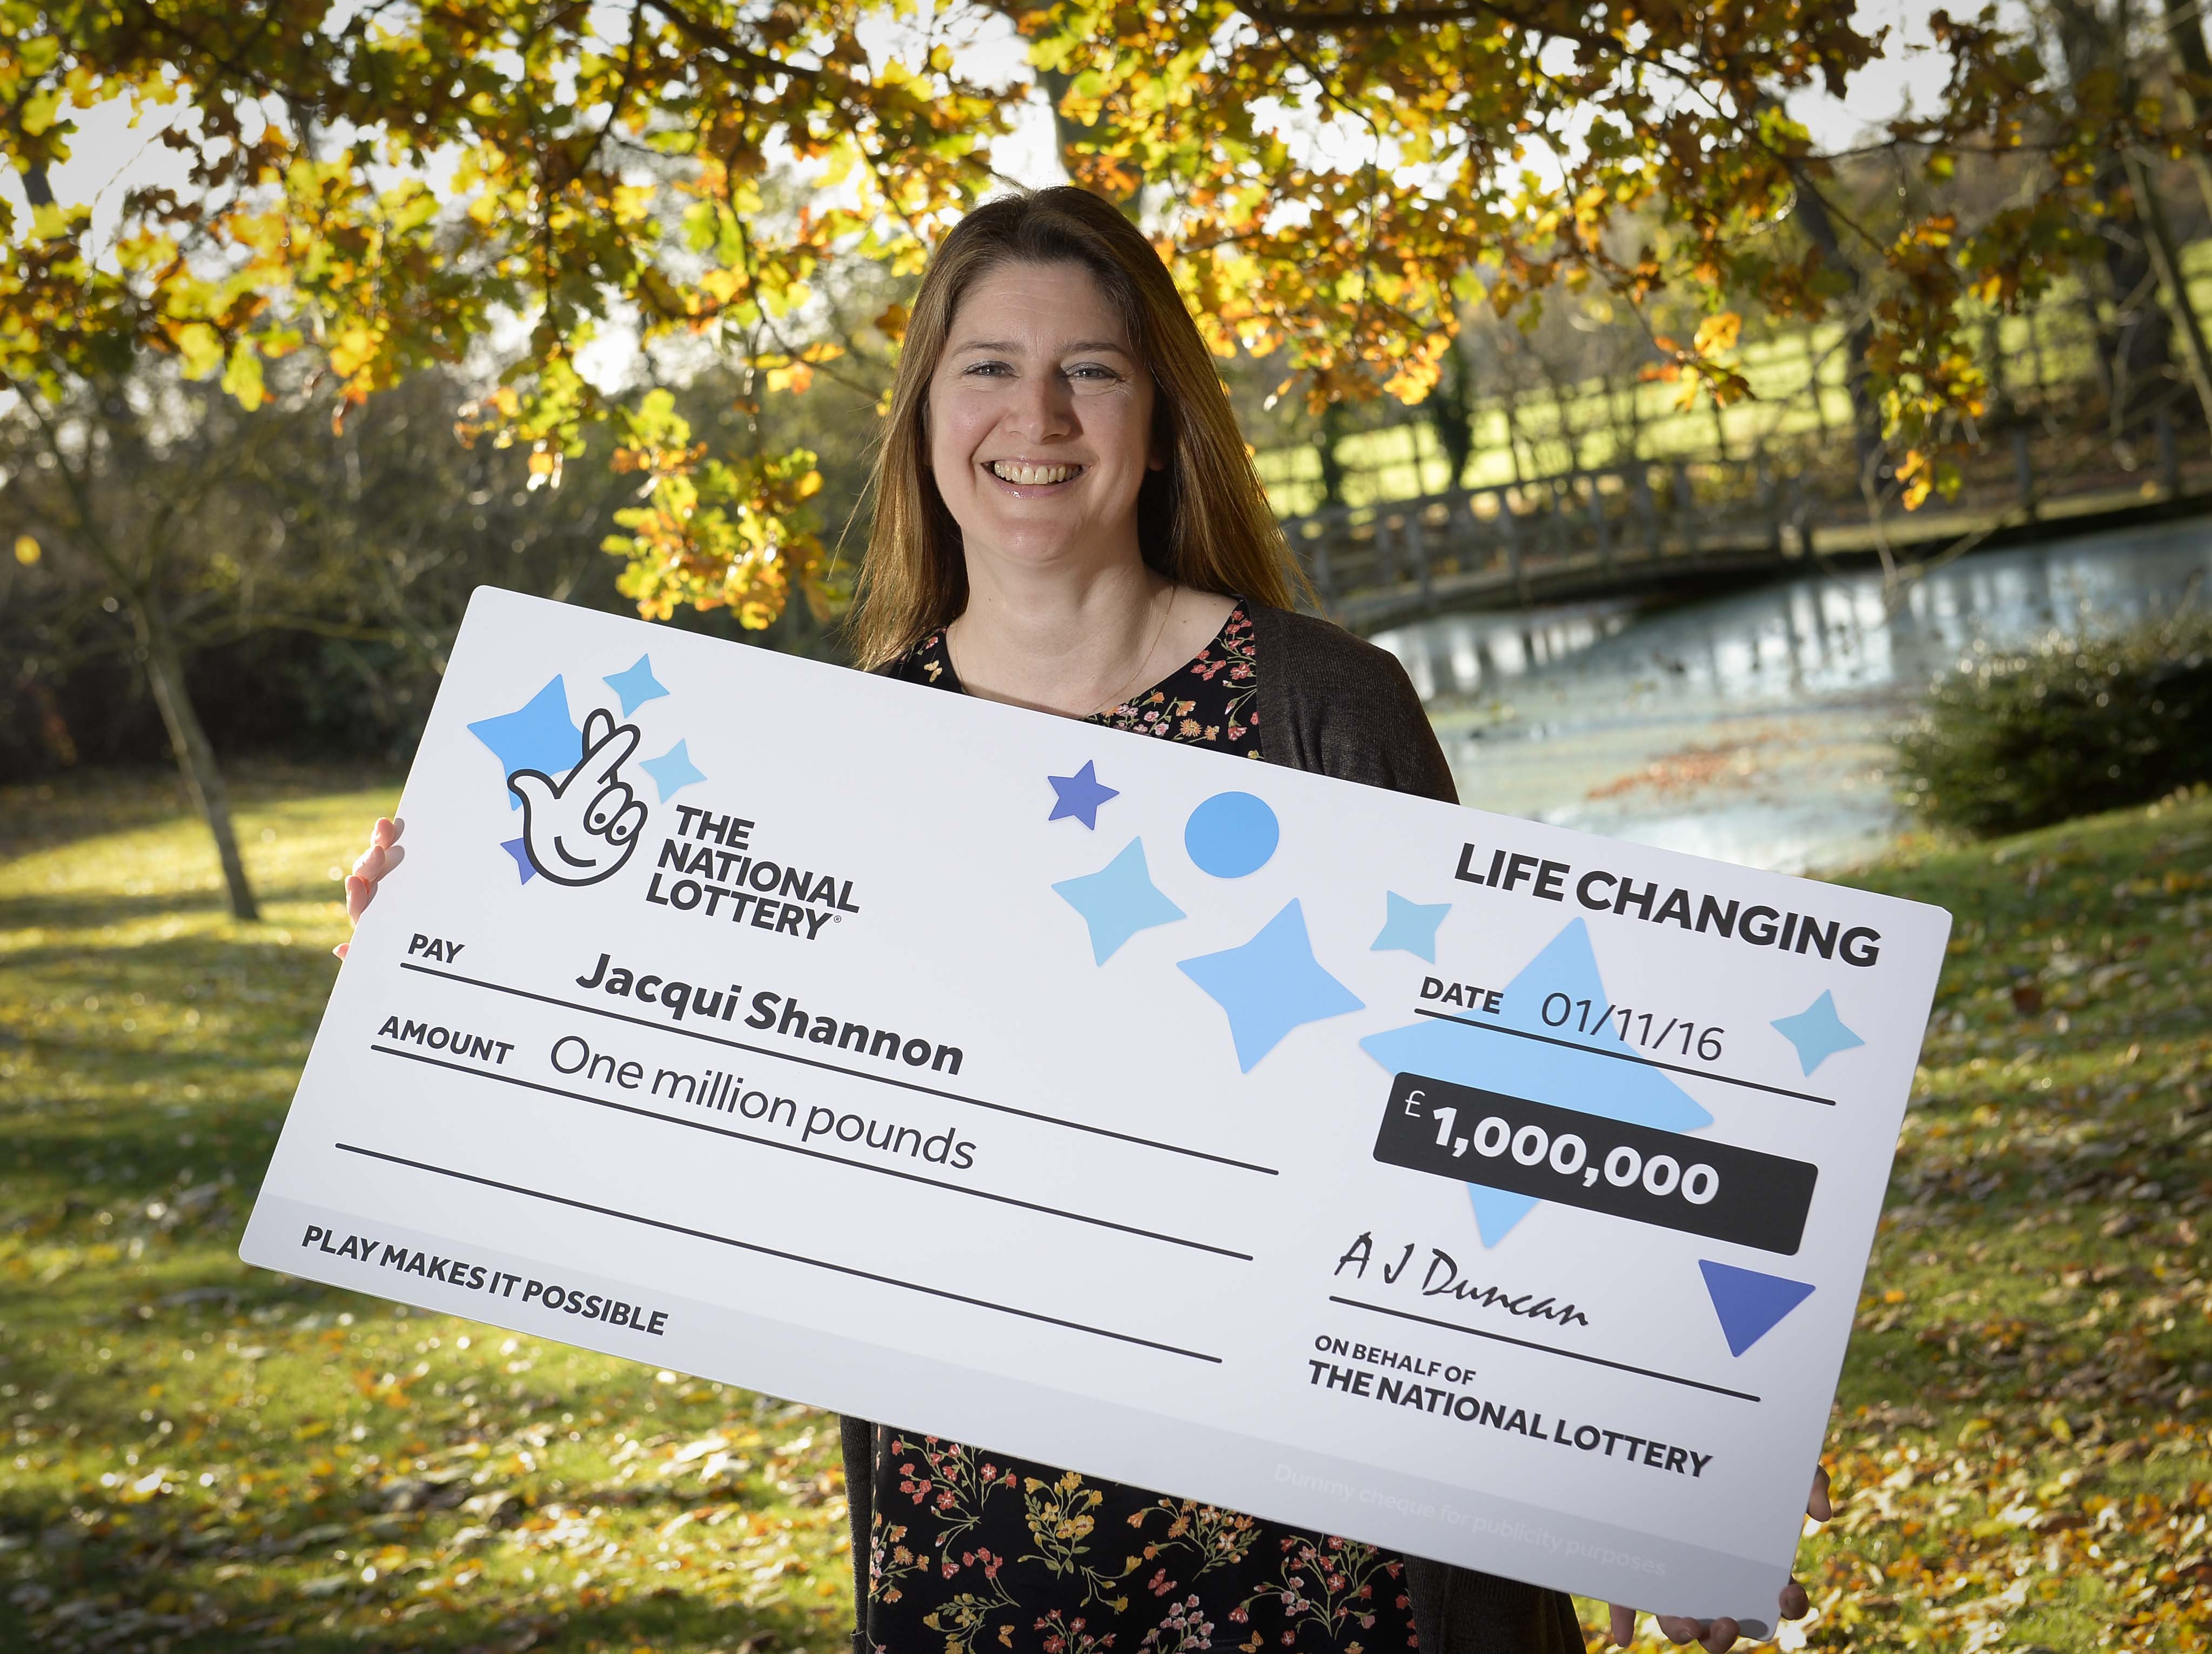 Jacqui Shannon, 46, hätte den Jackpot von 1 Million Pfund beinahe verpasst